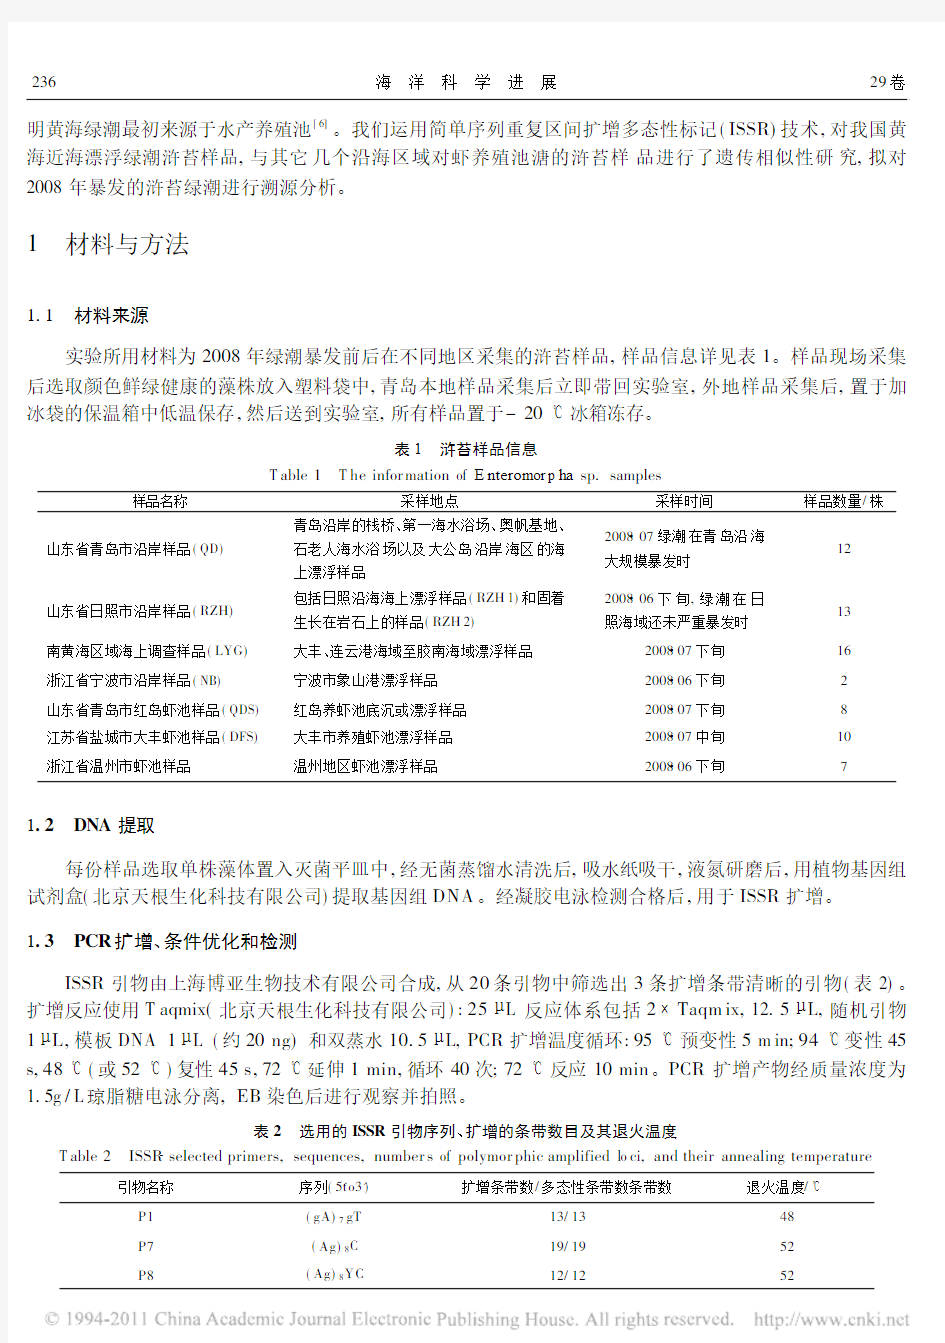 2008年黄海浒苔绿潮ISSR标记溯源分析